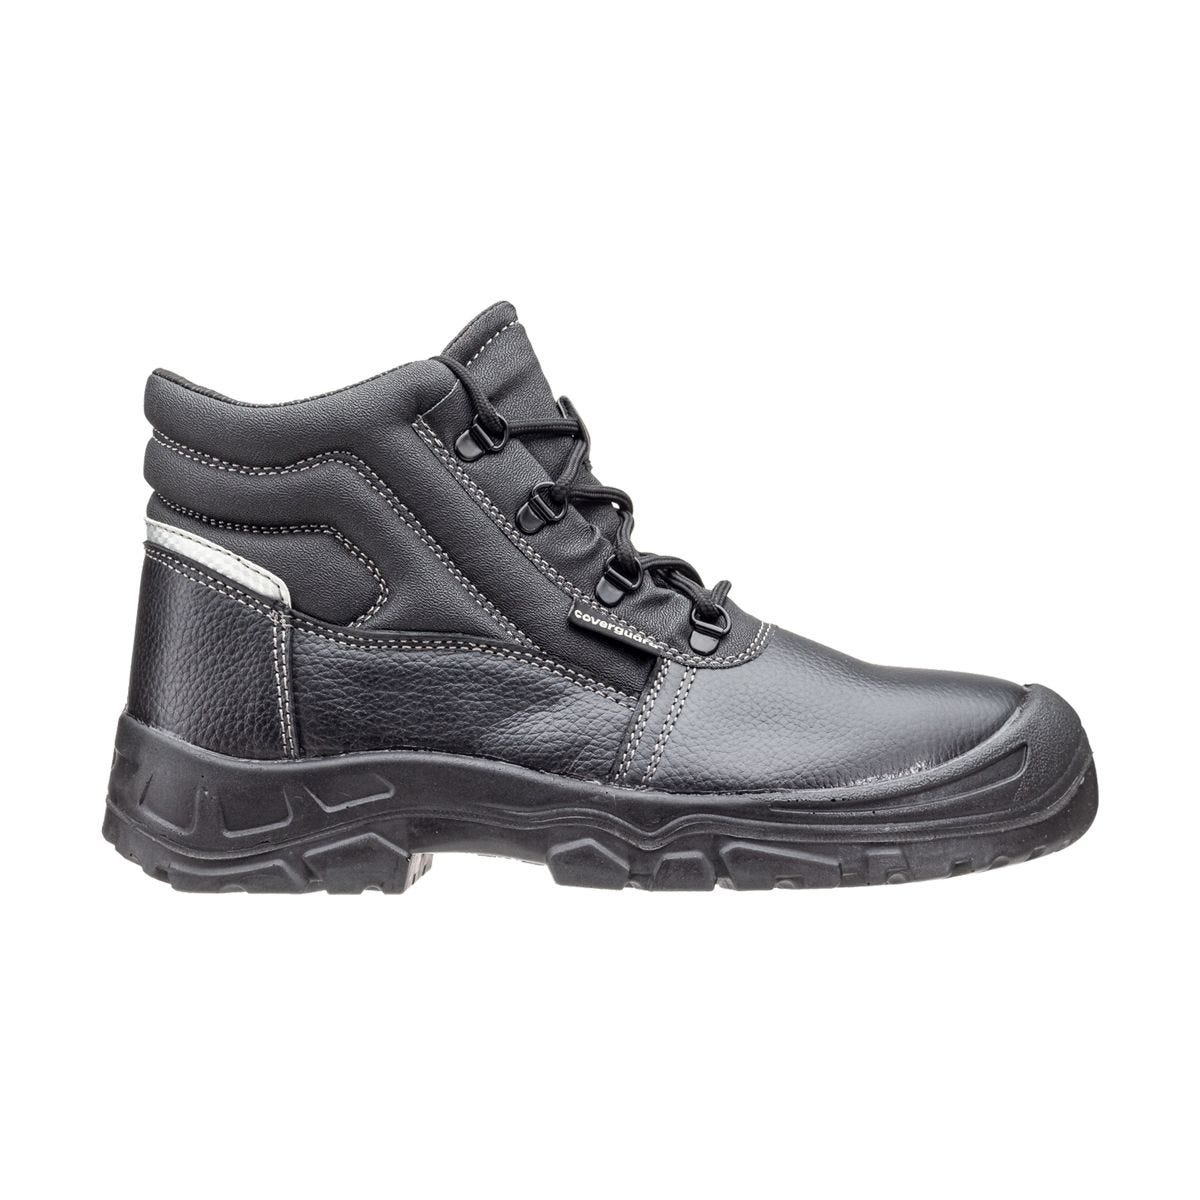 Chaussures de sécurité hautes Azurite II S3 ESD noir - Coverguard - Taille 47 1